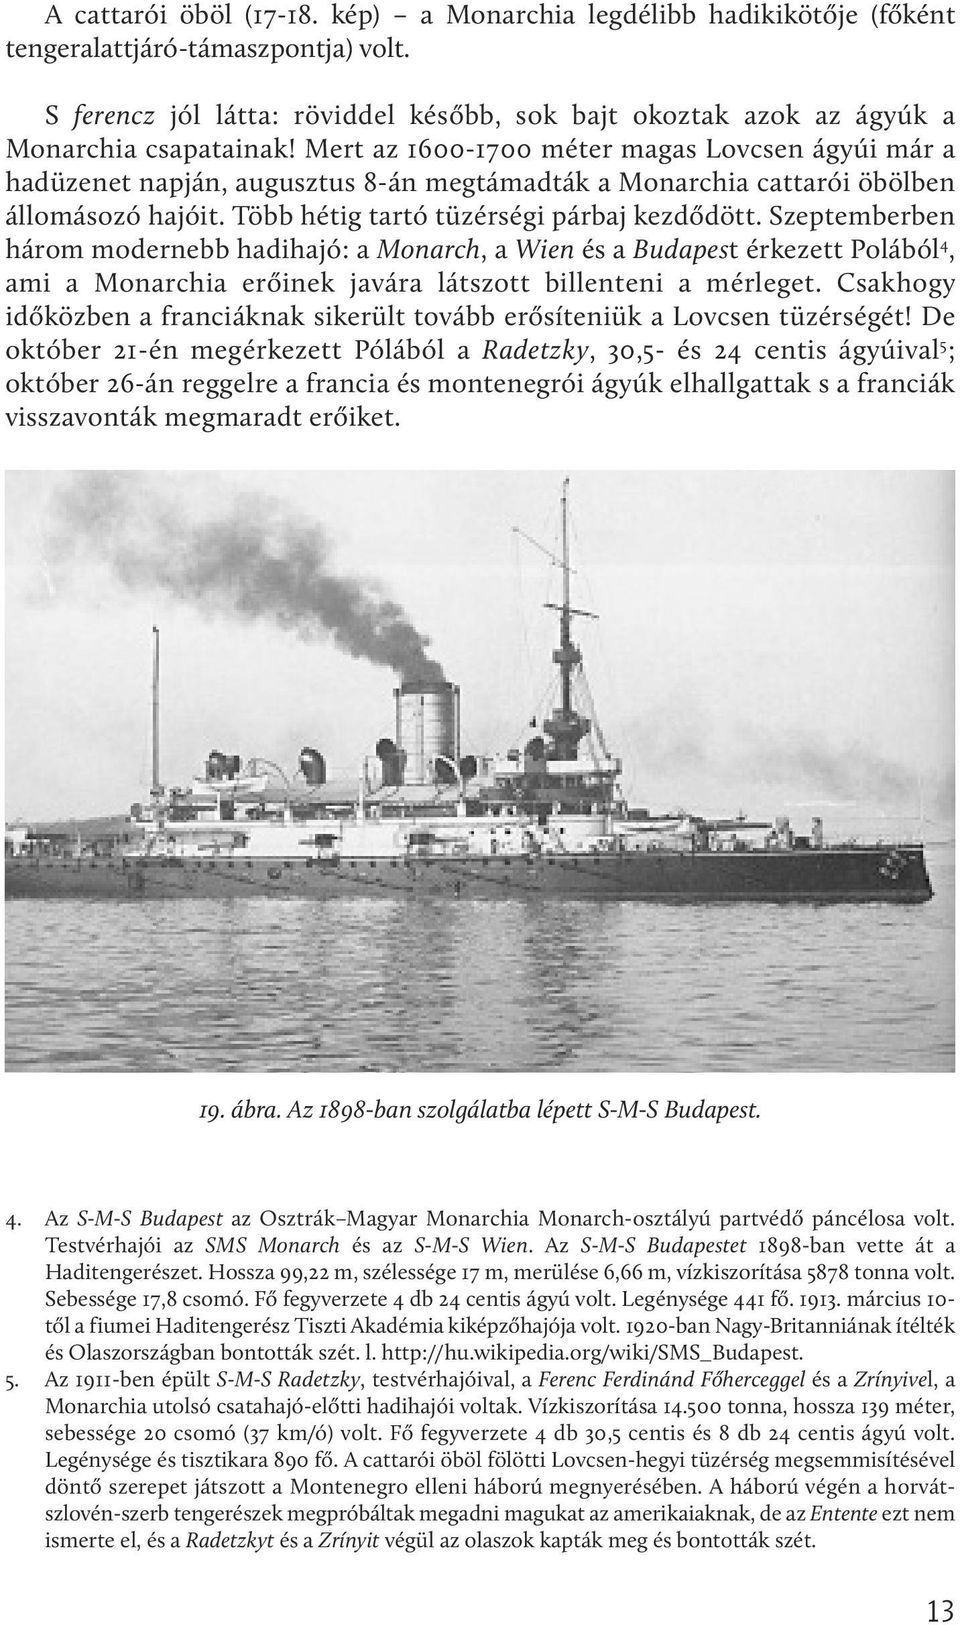 Mert az 1600-1700 méter magas Lovcsen ágyúi már a hadüzenet napján, augusztus 8-án megtámadták a Monarchia cattarói öbölben állomásozó hajóit. Több hétig tartó tüzérségi párbaj kezdődött.